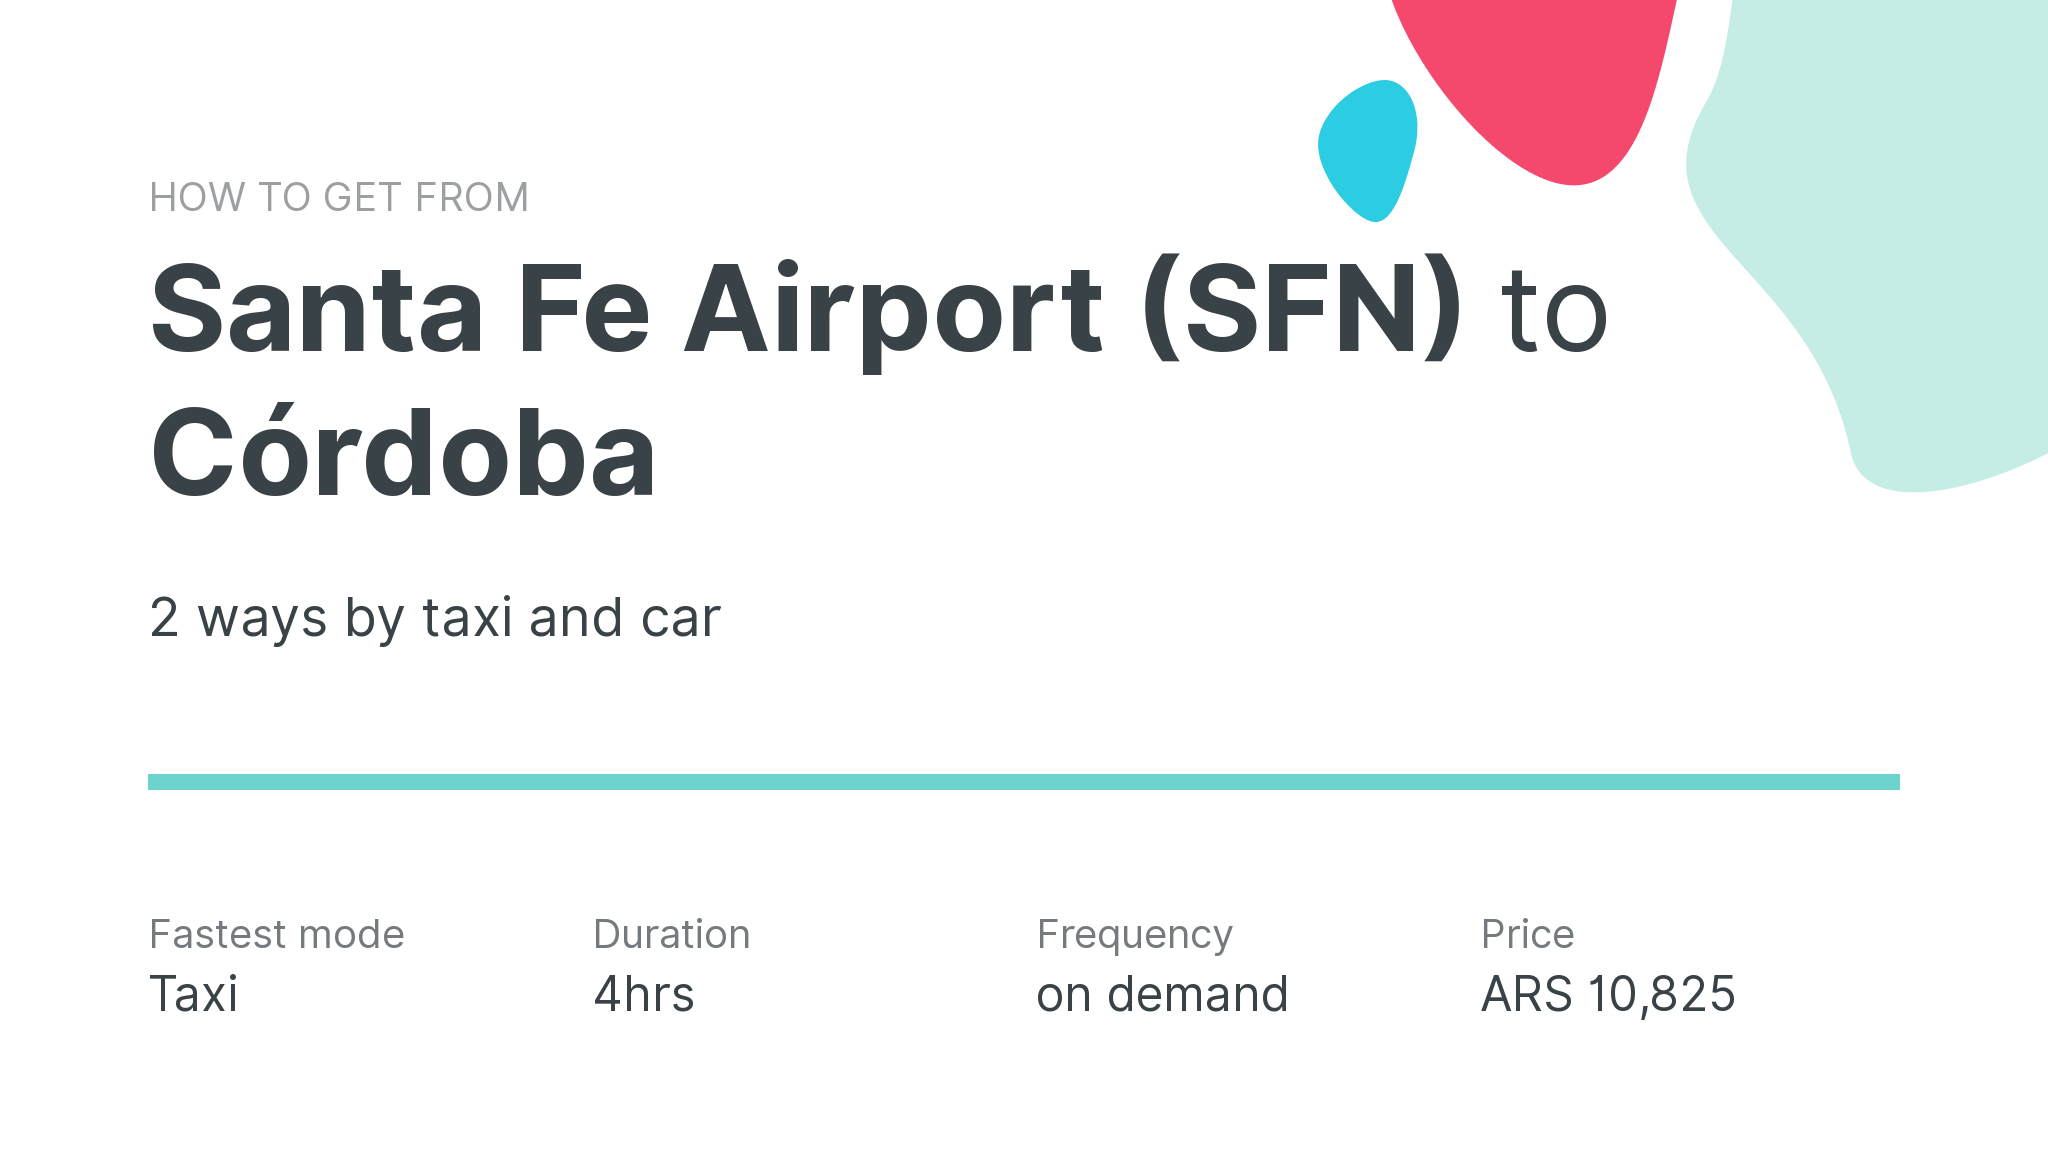 How do I get from Santa Fe Airport (SFN) to Córdoba